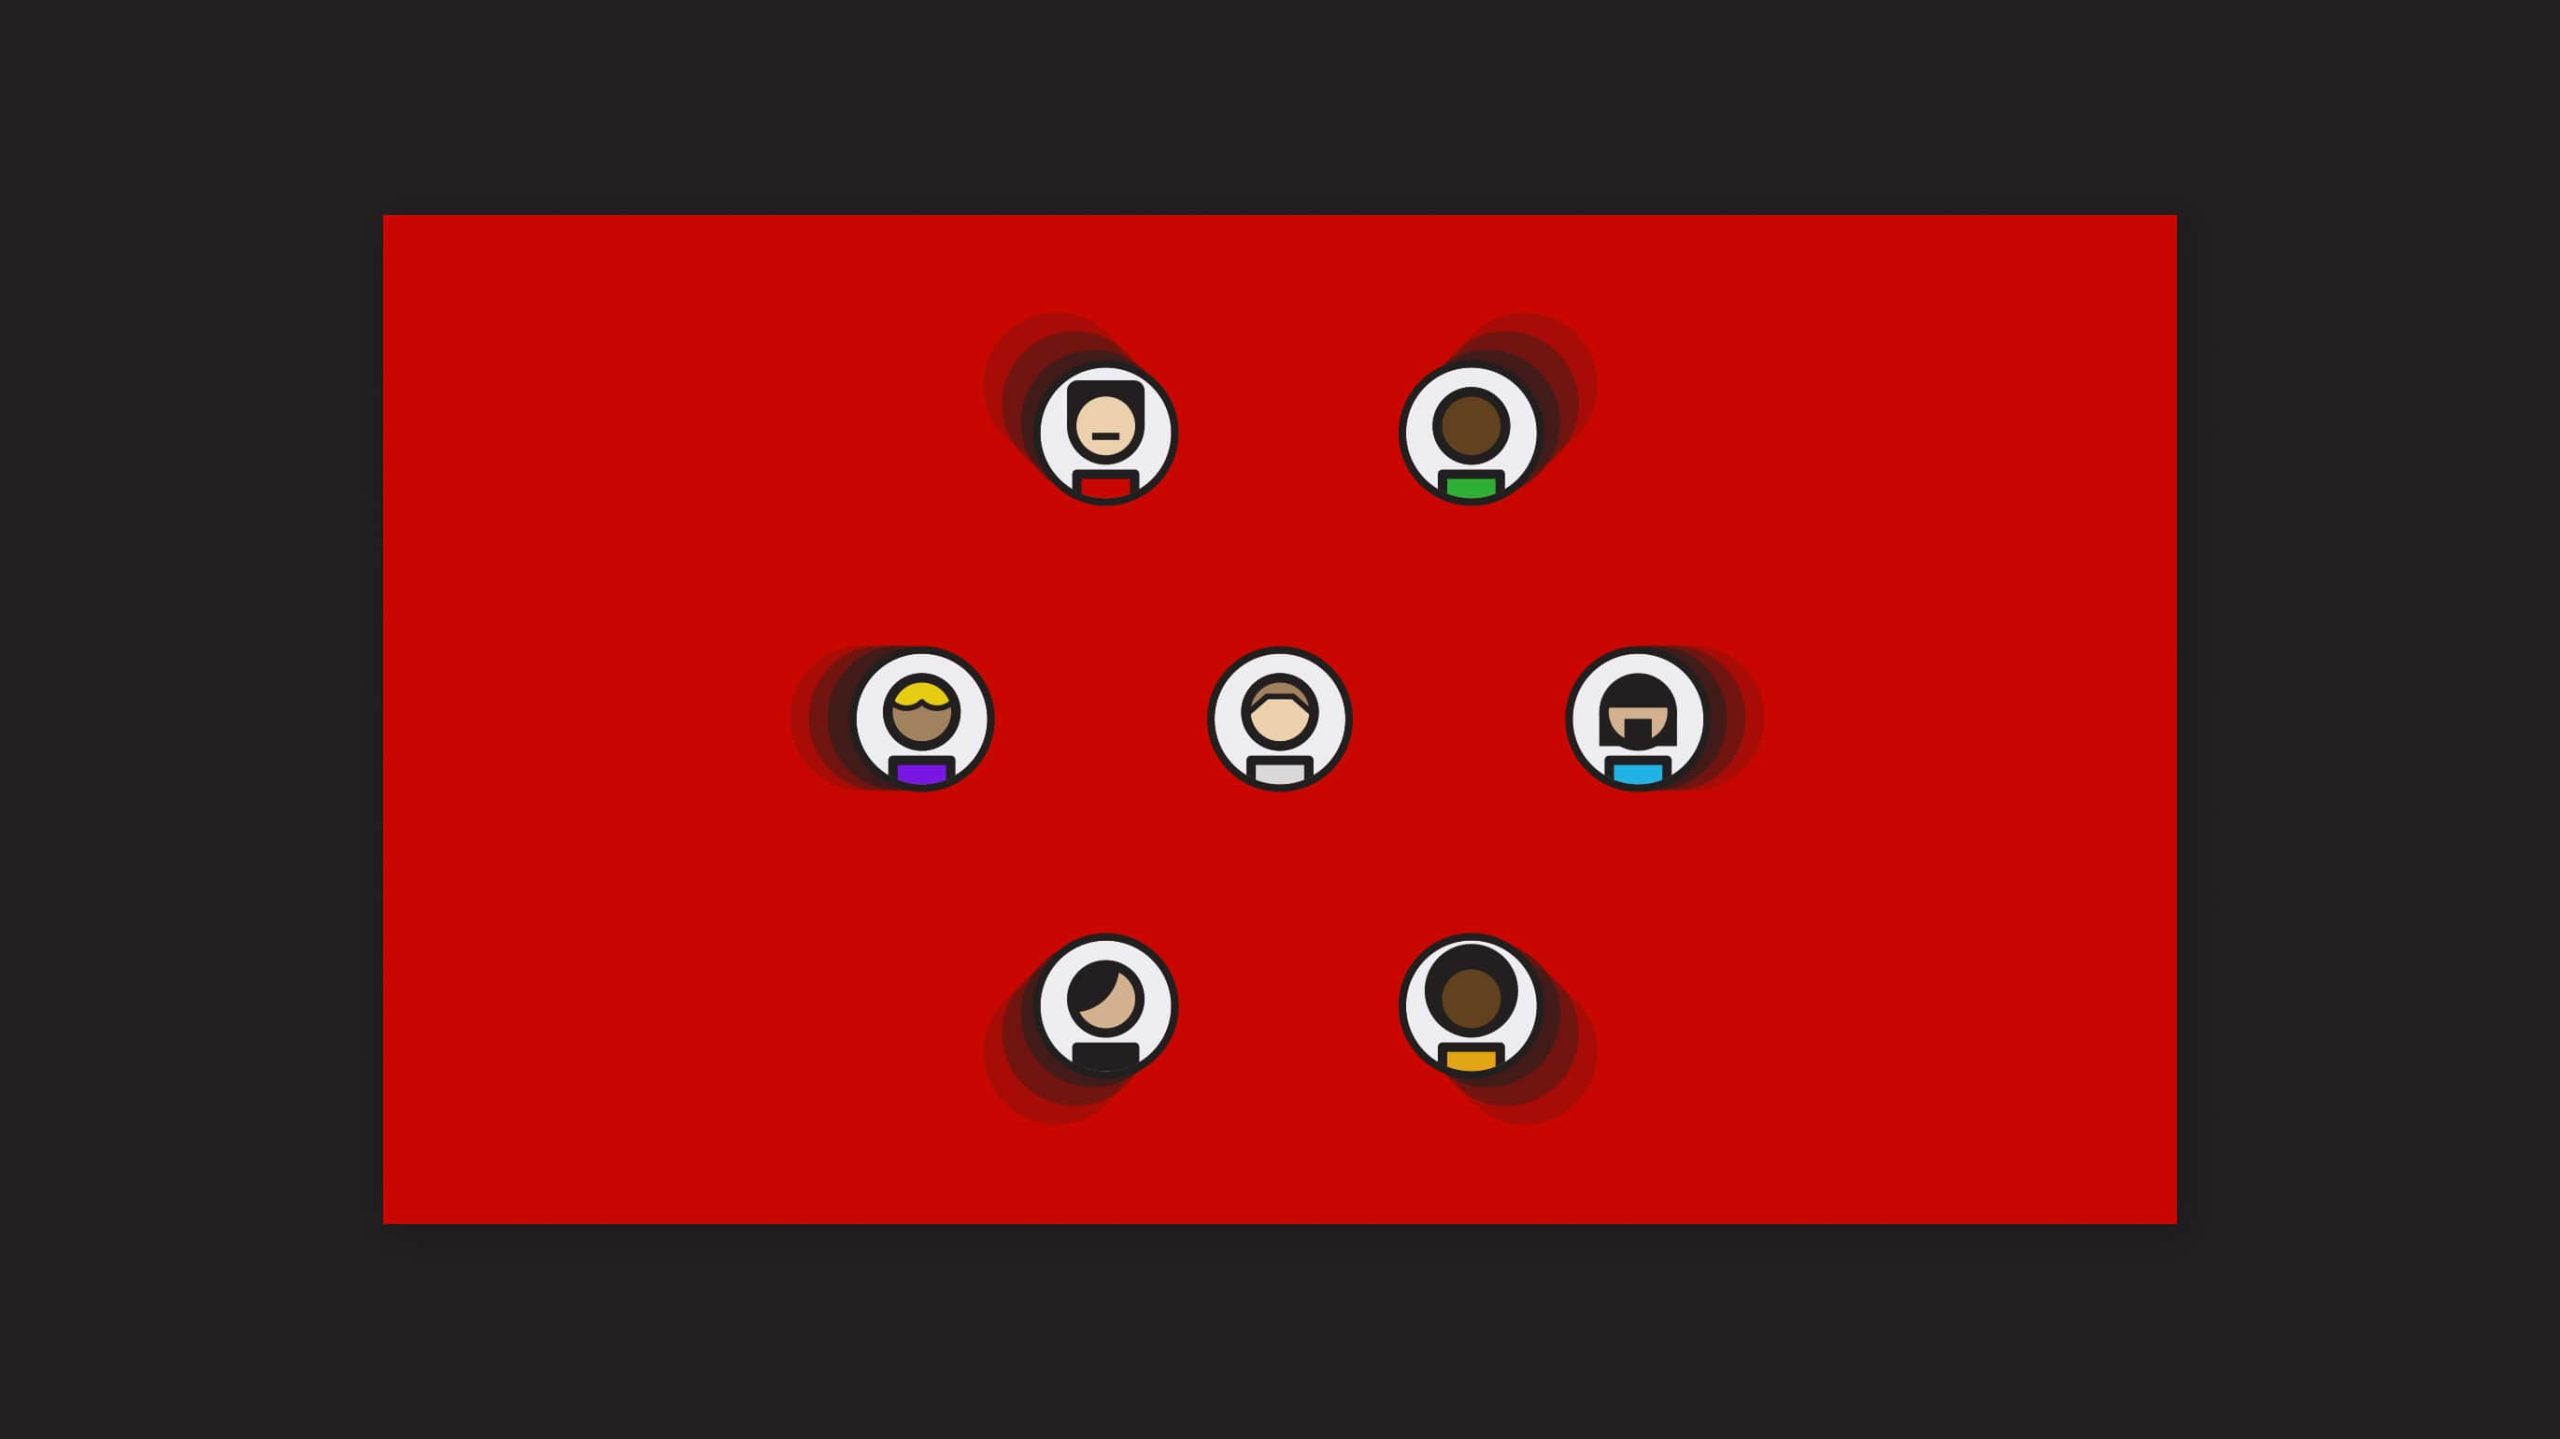 Captura del motion graphics de As Biwenger donde muestran iconos de jugadores